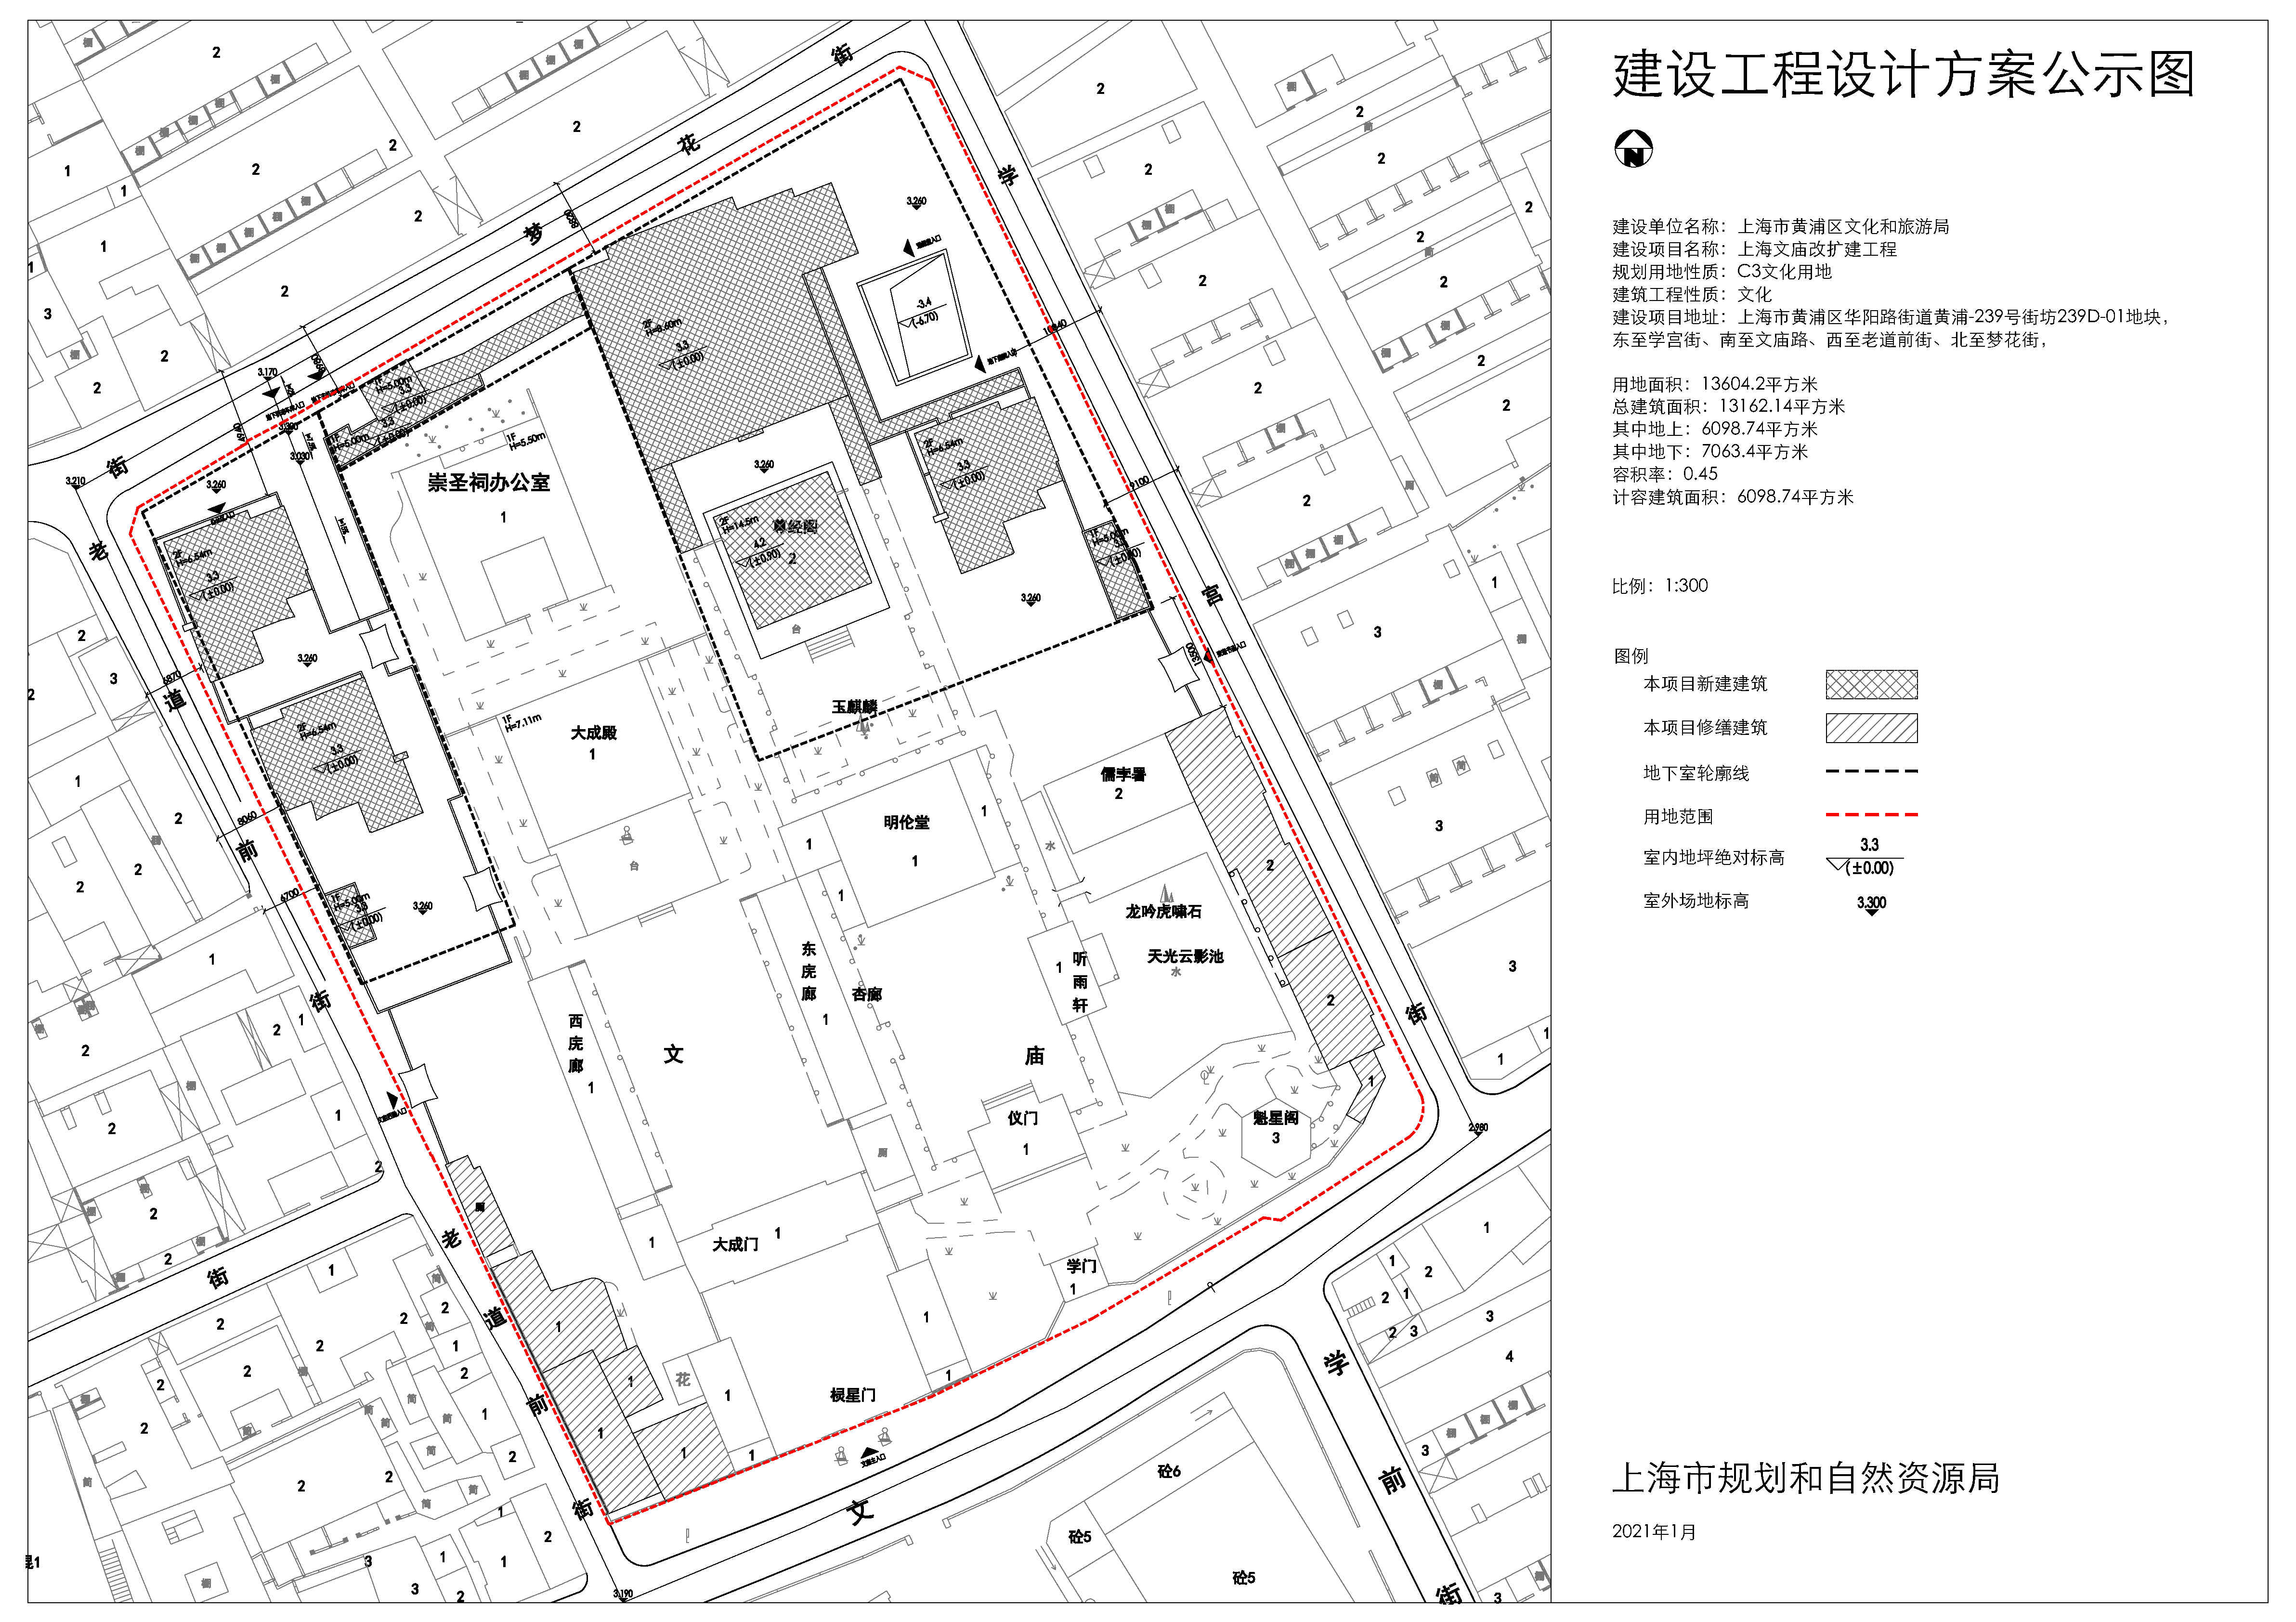 关于"上海文庙改扩建工程"建设工程方案的公示